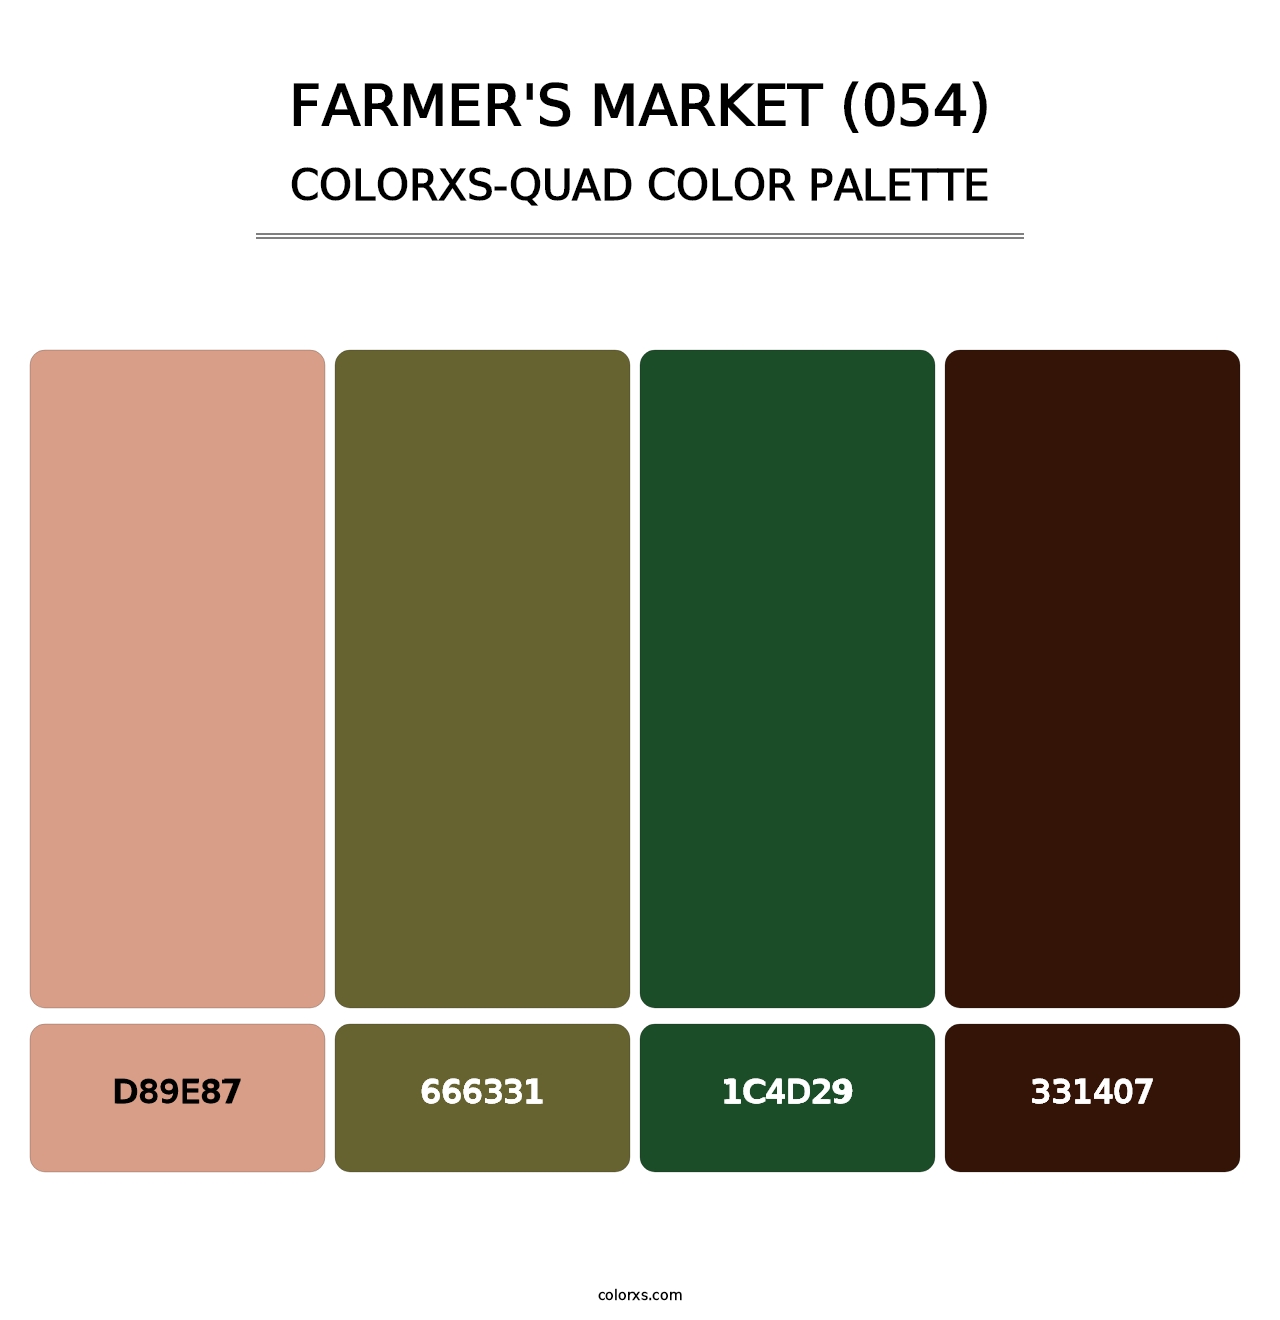 Farmer's Market (054) - Colorxs Quad Palette